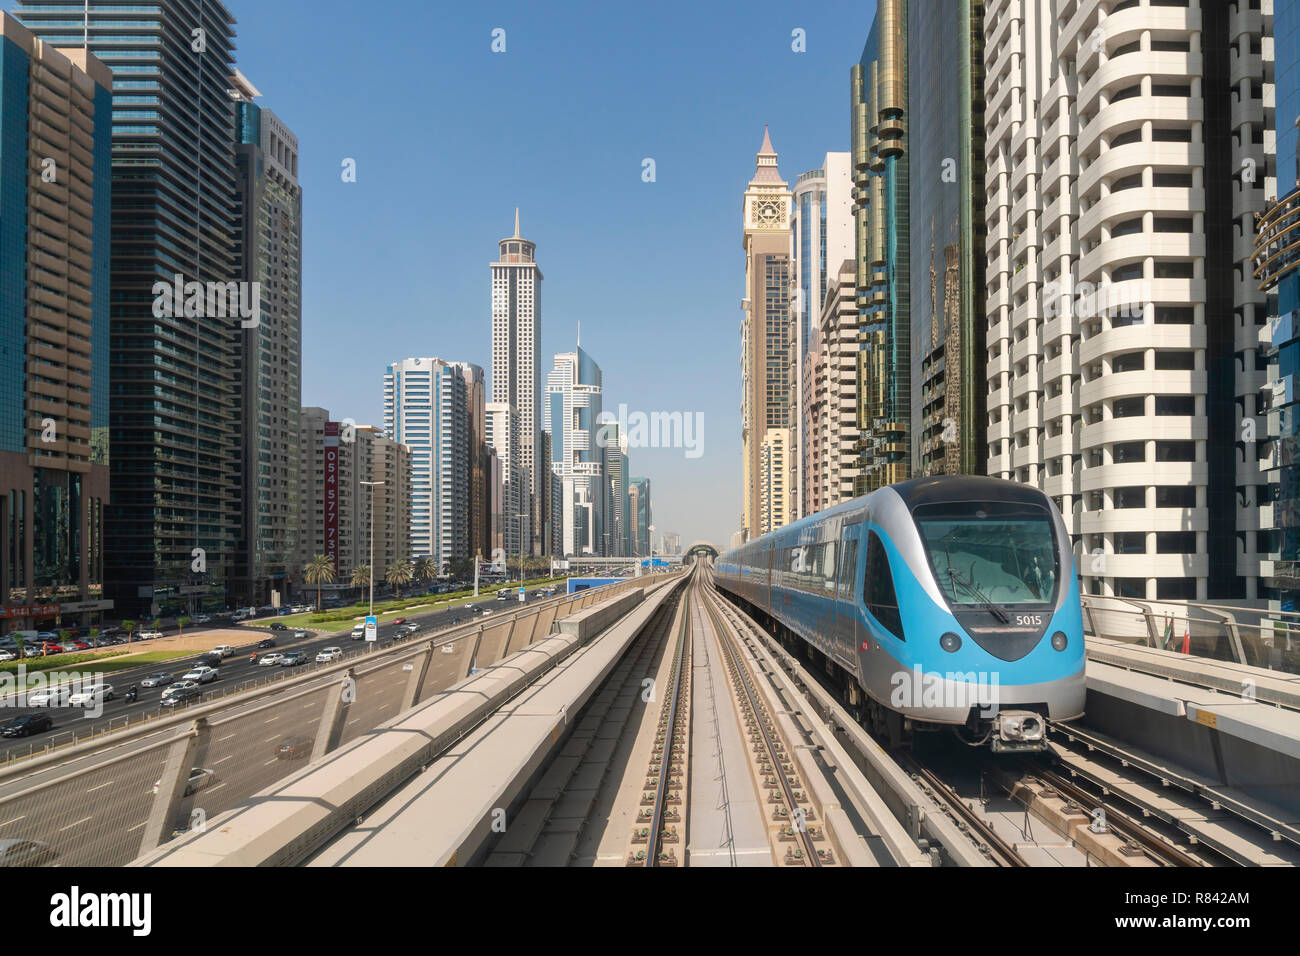 View of Metro train in downtown Dubai Stock Photo